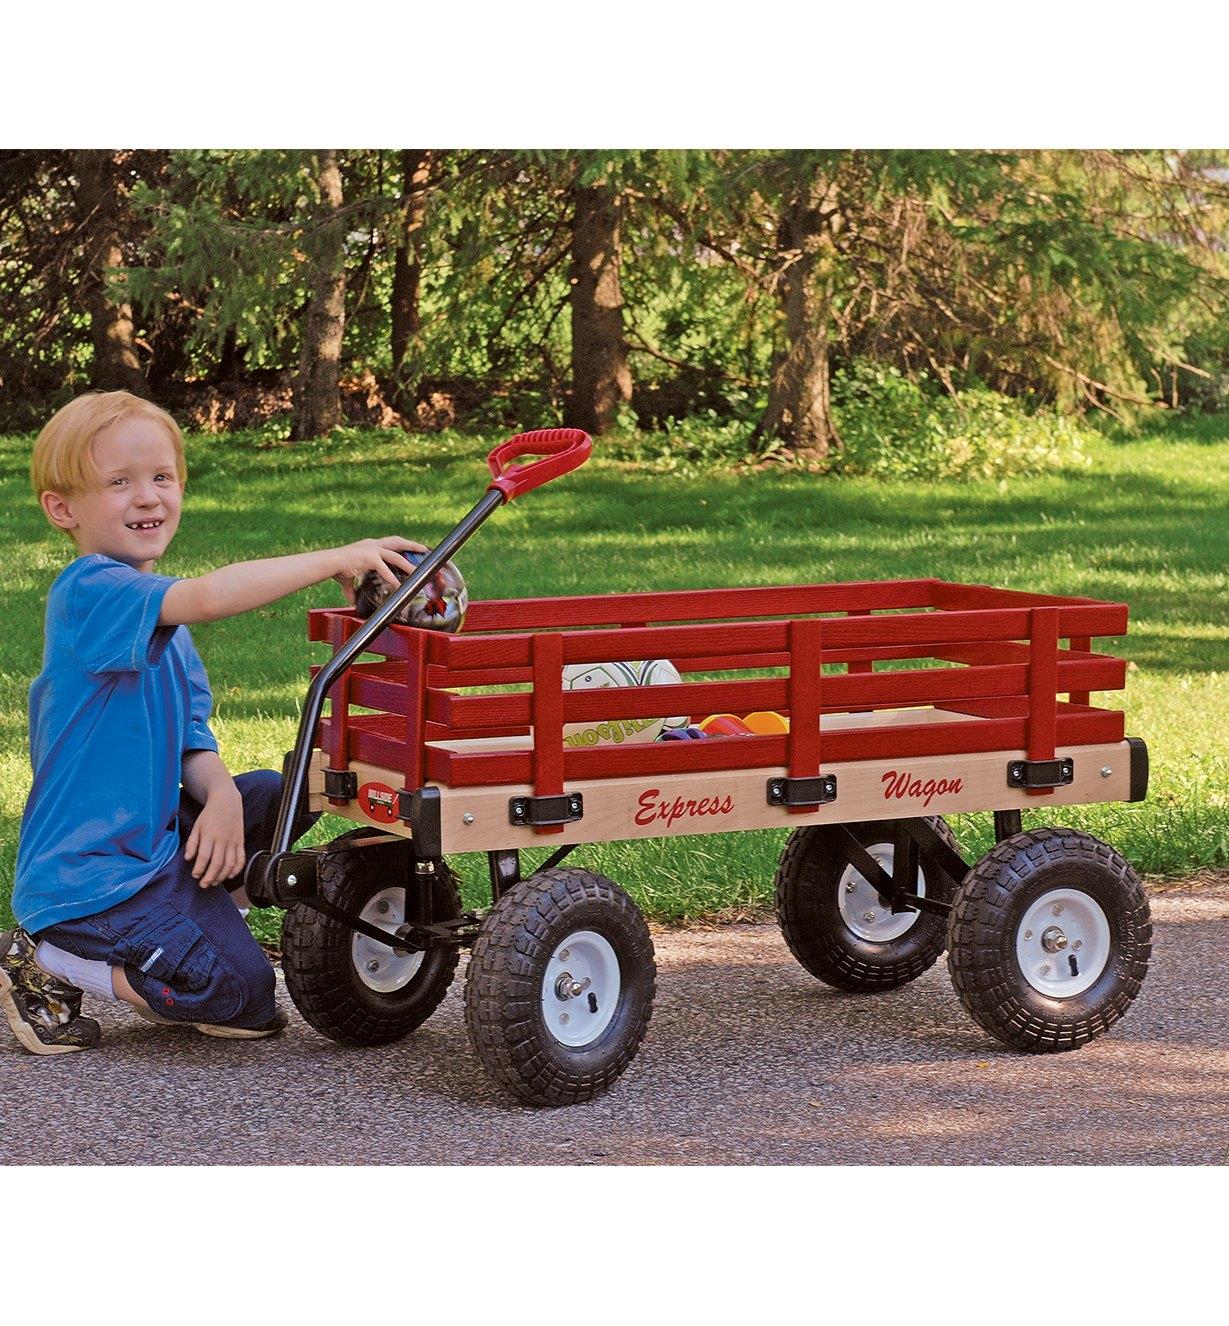 Garçon plaçant un ballon dans un chariot convertible toutes-saisons monté sur roues